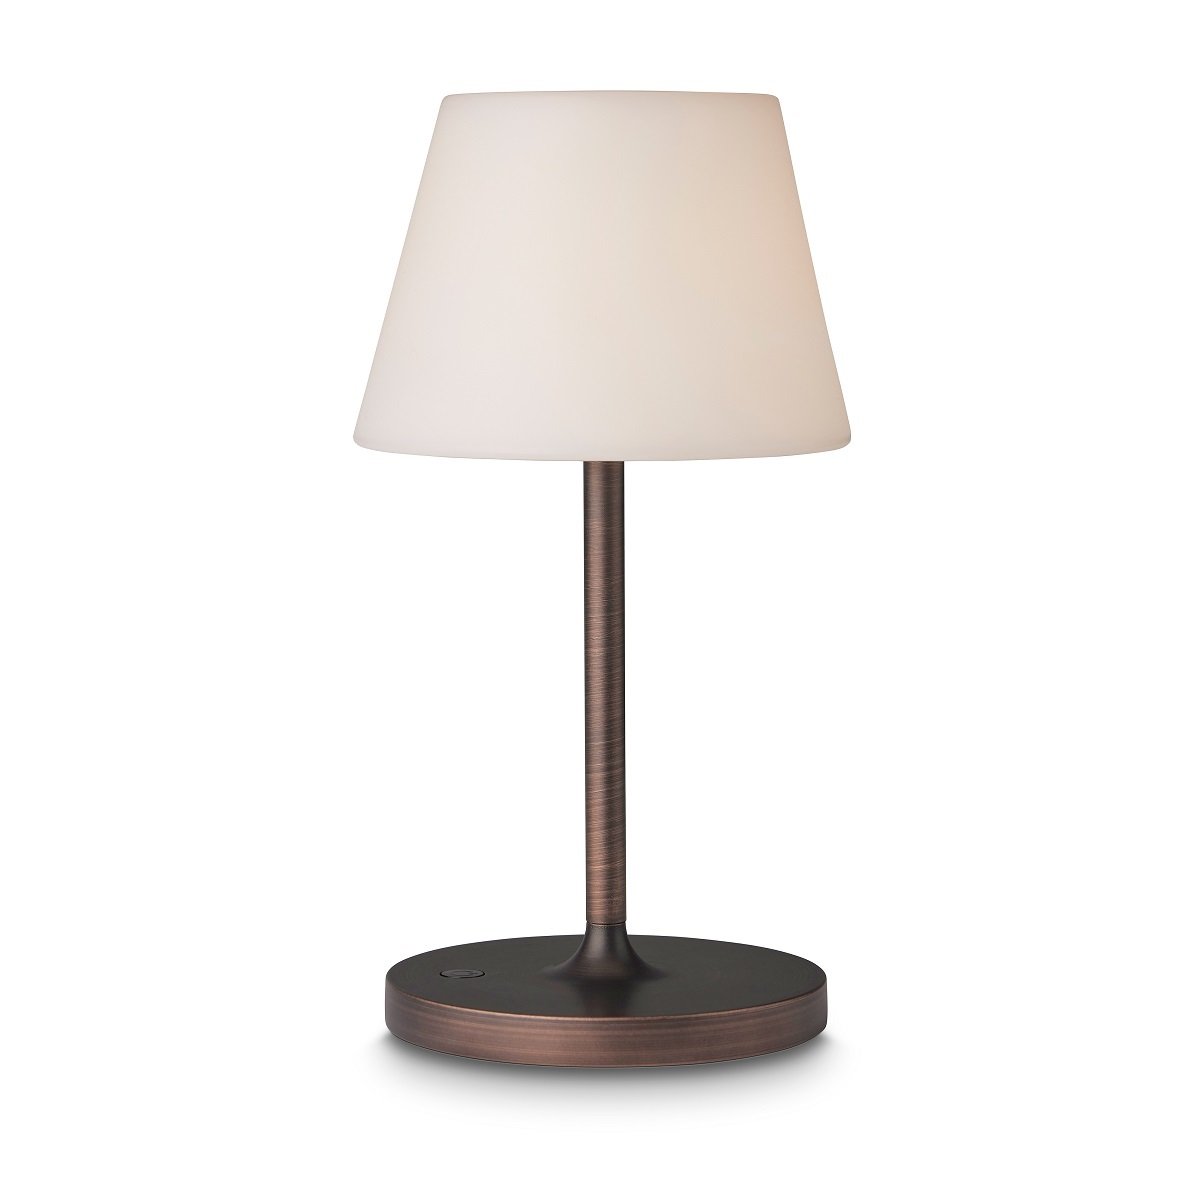 New & Leuchten antik Lampen im kupfer Tischleuchte online 800940 Design Northern kaufen --> Shop Halo 15cm